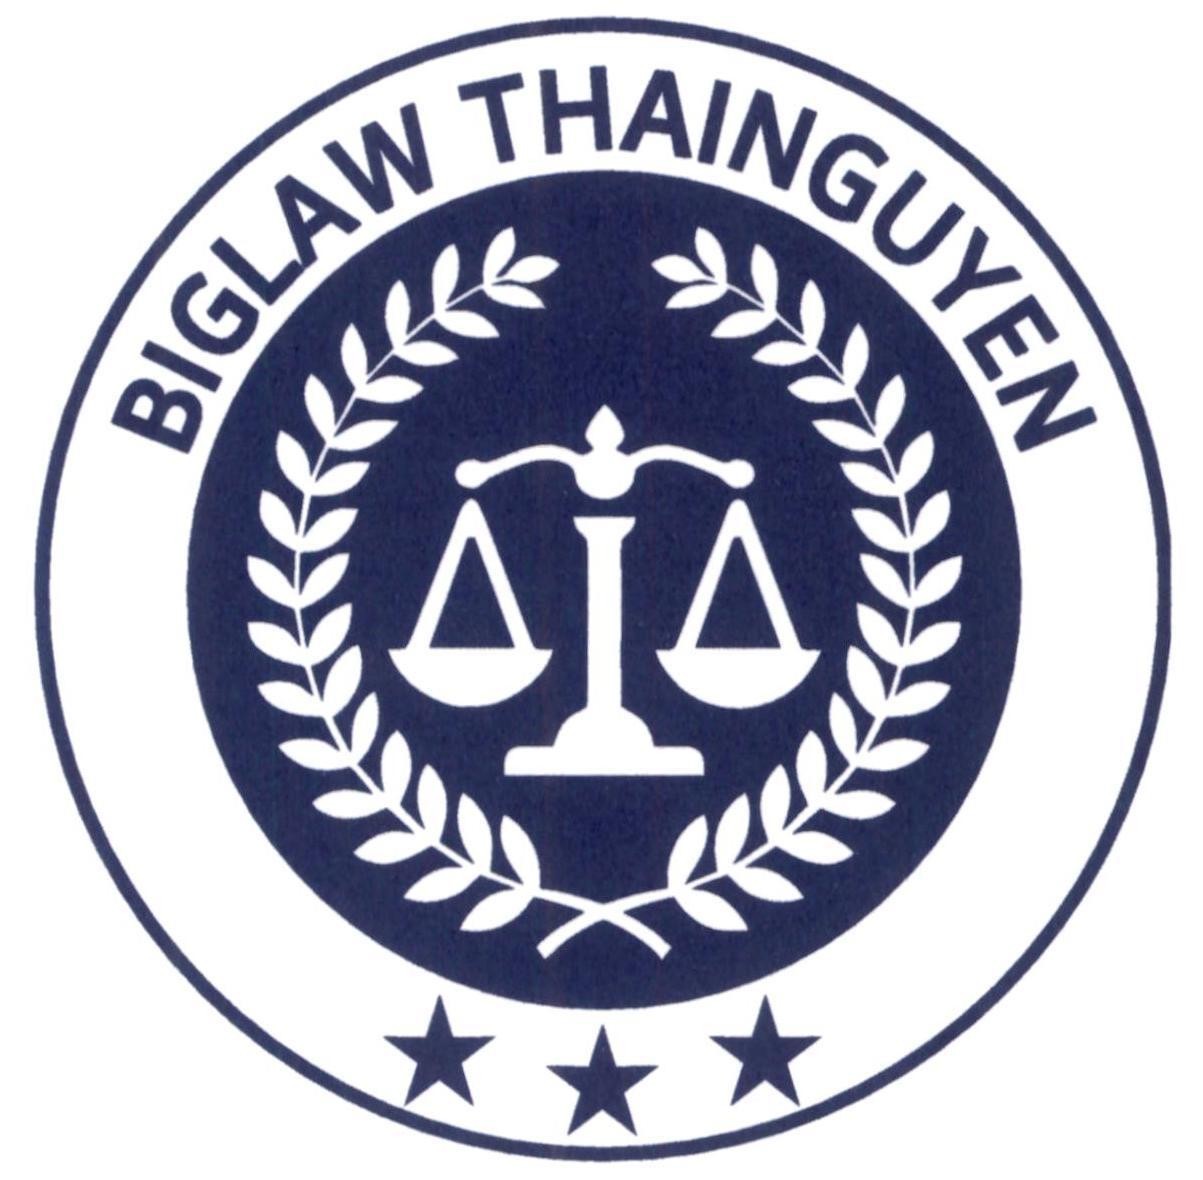 BIGLAW THAINGUYEN